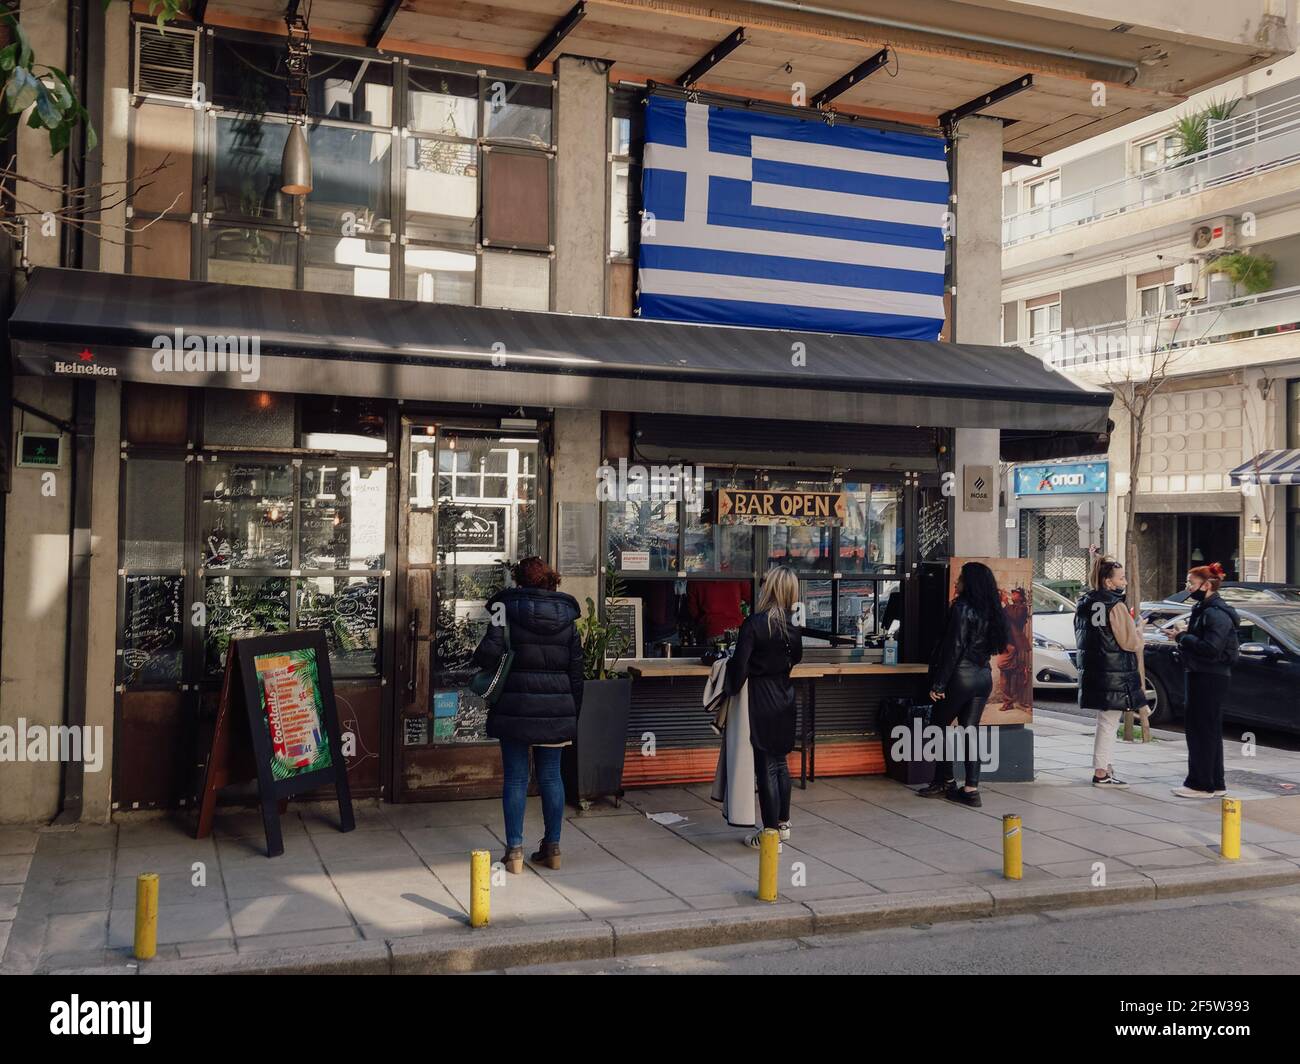 Salonicco, Grecia - Marzo 27 2021: Clienti al di fuori del banco di lavoro da take-away a causa delle restrizioni del covid-19. La folla ellenica sul marciapiede compra la propria bevanda da un negozio con una grande bandiera greca sopra. Foto Stock